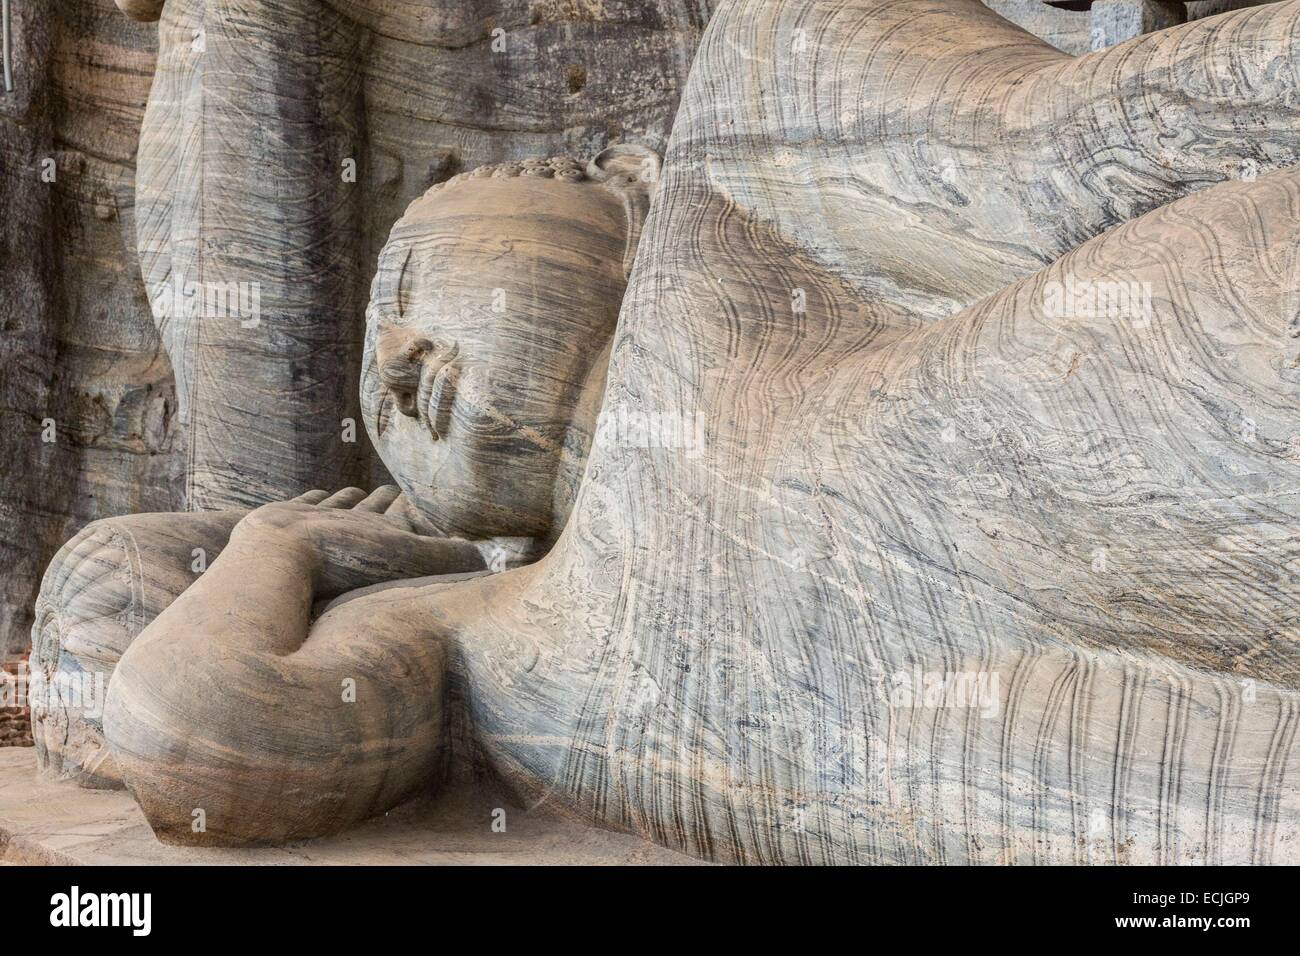 Sri Lanka, Nord provincia centrale, Polonnaruwa, ex capitale del paese (XI al XIII secolo) elencati come patrimonio mondiale dall' UNESCO, Vihariya Gal (Gal Vihara), il grande Buddha sdraiato raggiunto il Nirv 'na (15 metri di lunghezza) è stata scolpita nella roccia io Foto Stock